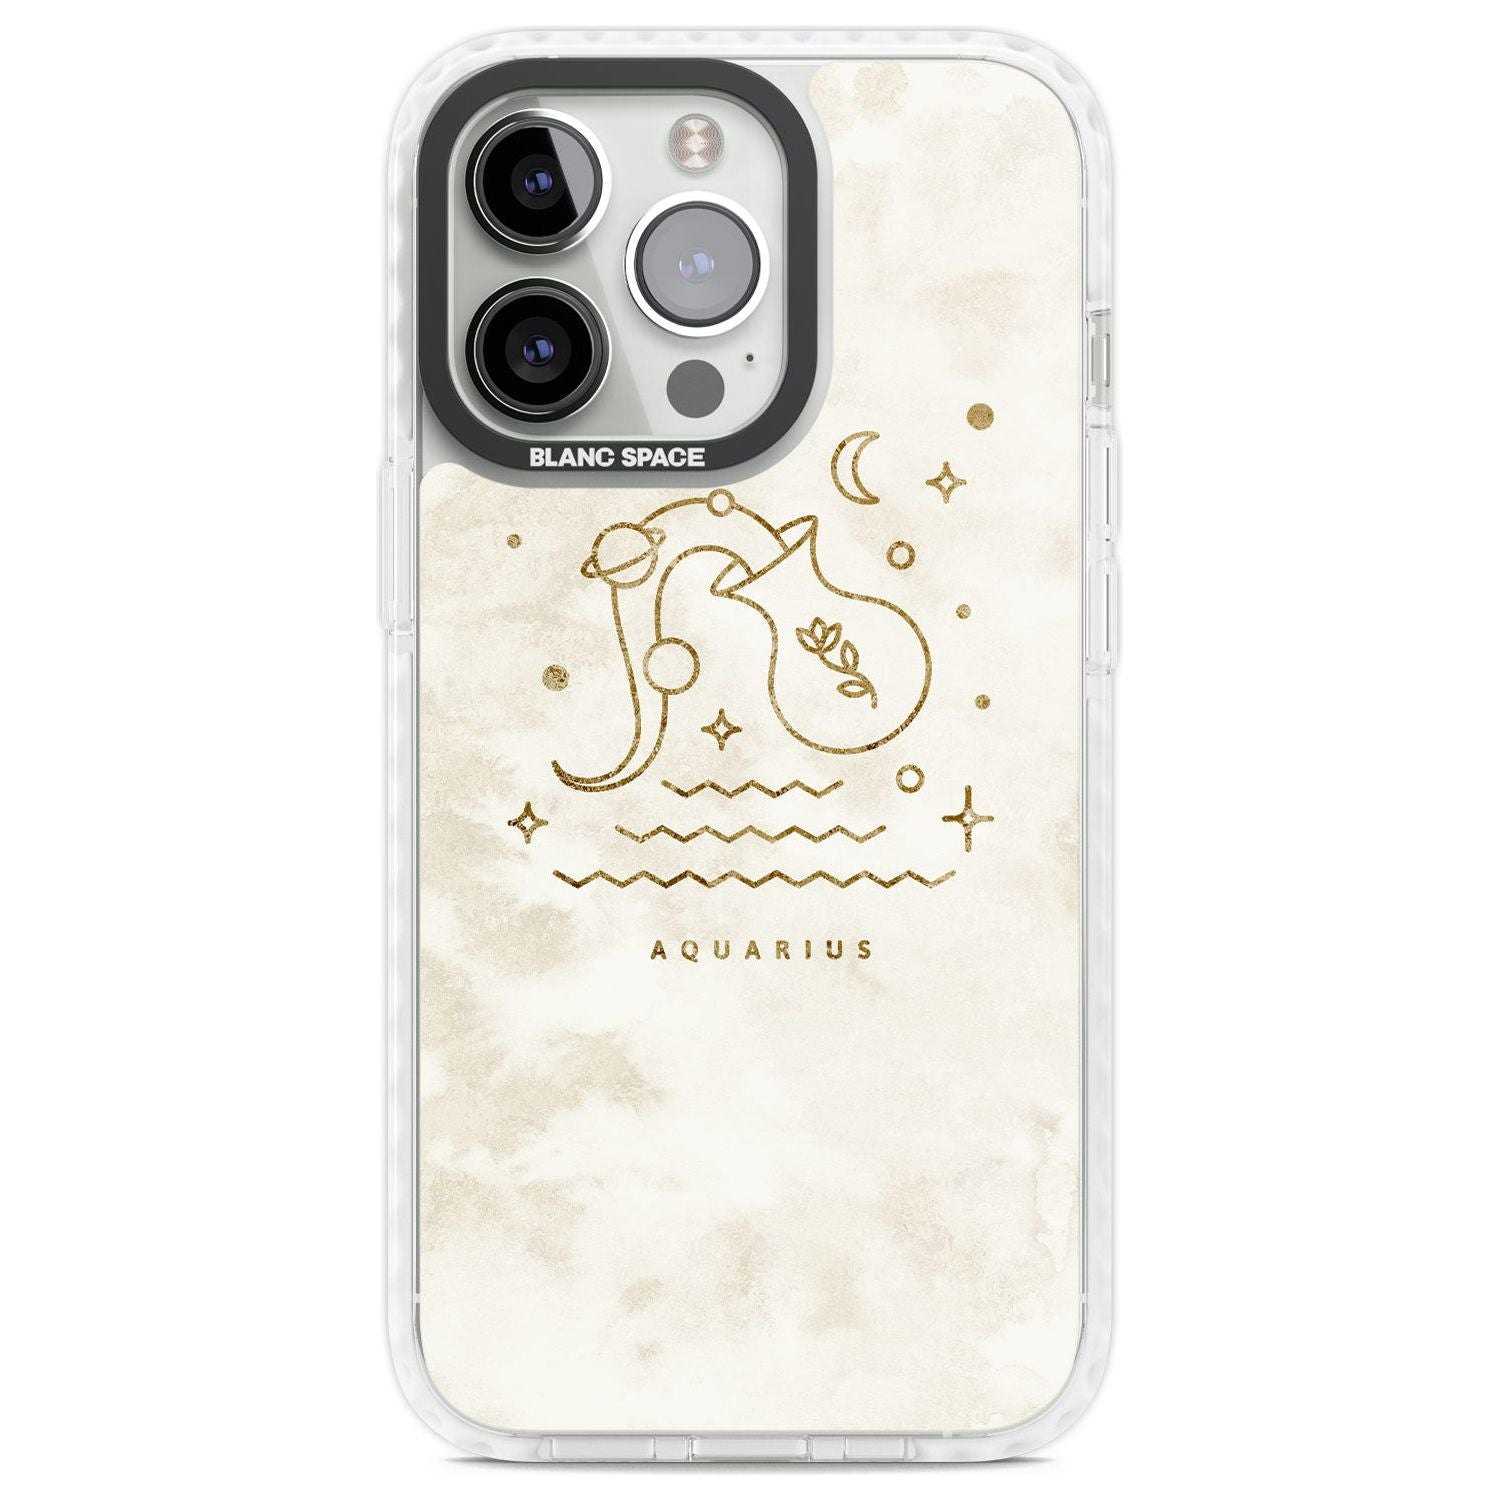 Aquarius Emblem - Solid Gold Marbled Design Phone Case iPhone 13 Pro / Impact Case,iPhone 14 Pro / Impact Case,iPhone 15 Pro Max / Impact Case,iPhone 15 Pro / Impact Case Blanc Space